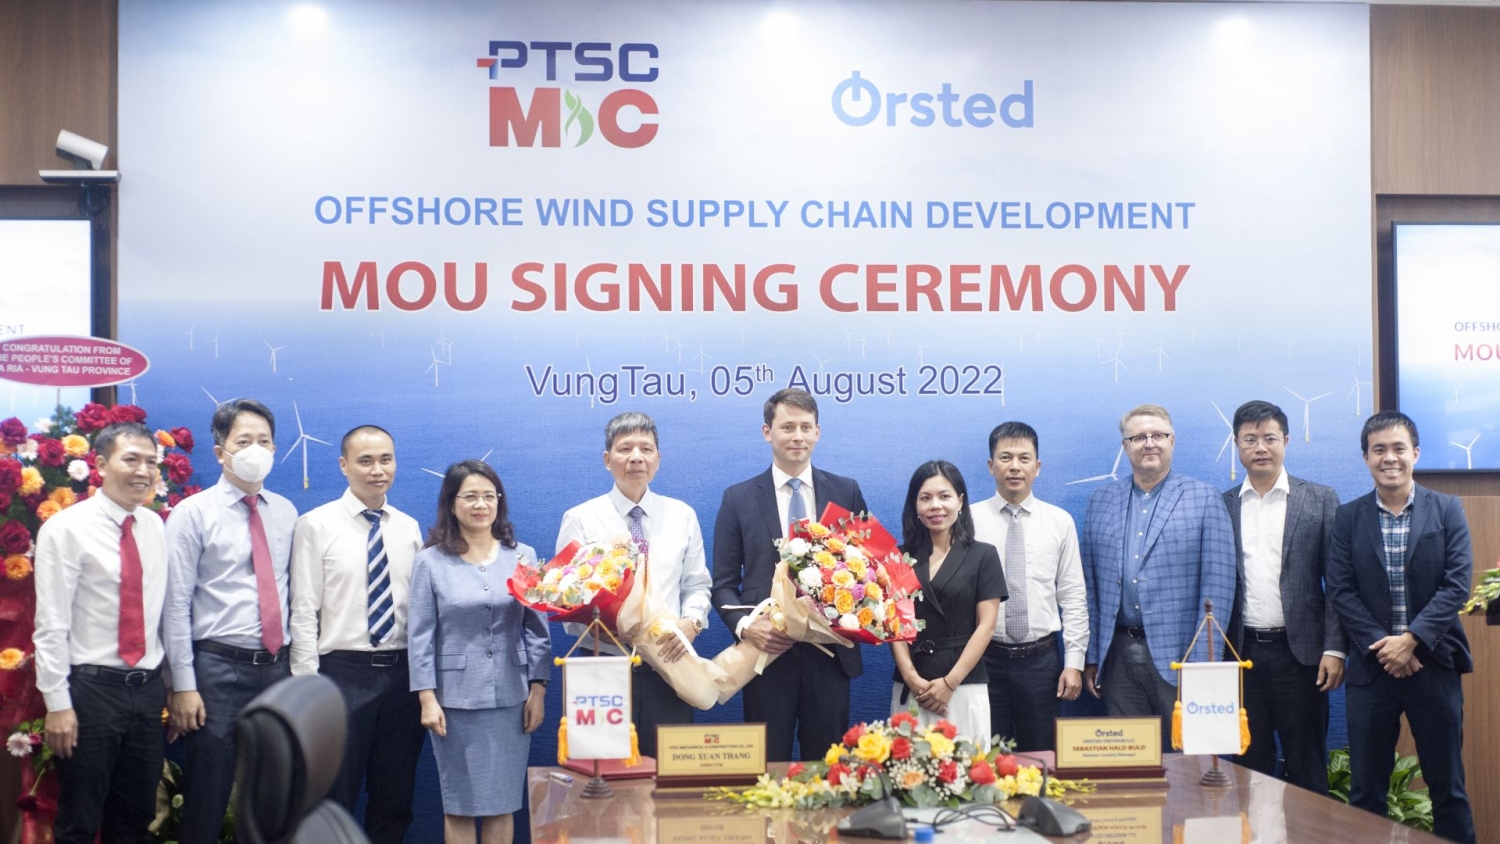 PTSC M&C khởi động quan hệ hợp tác với Ørsted trong các dự án điện gió ngoài khơi